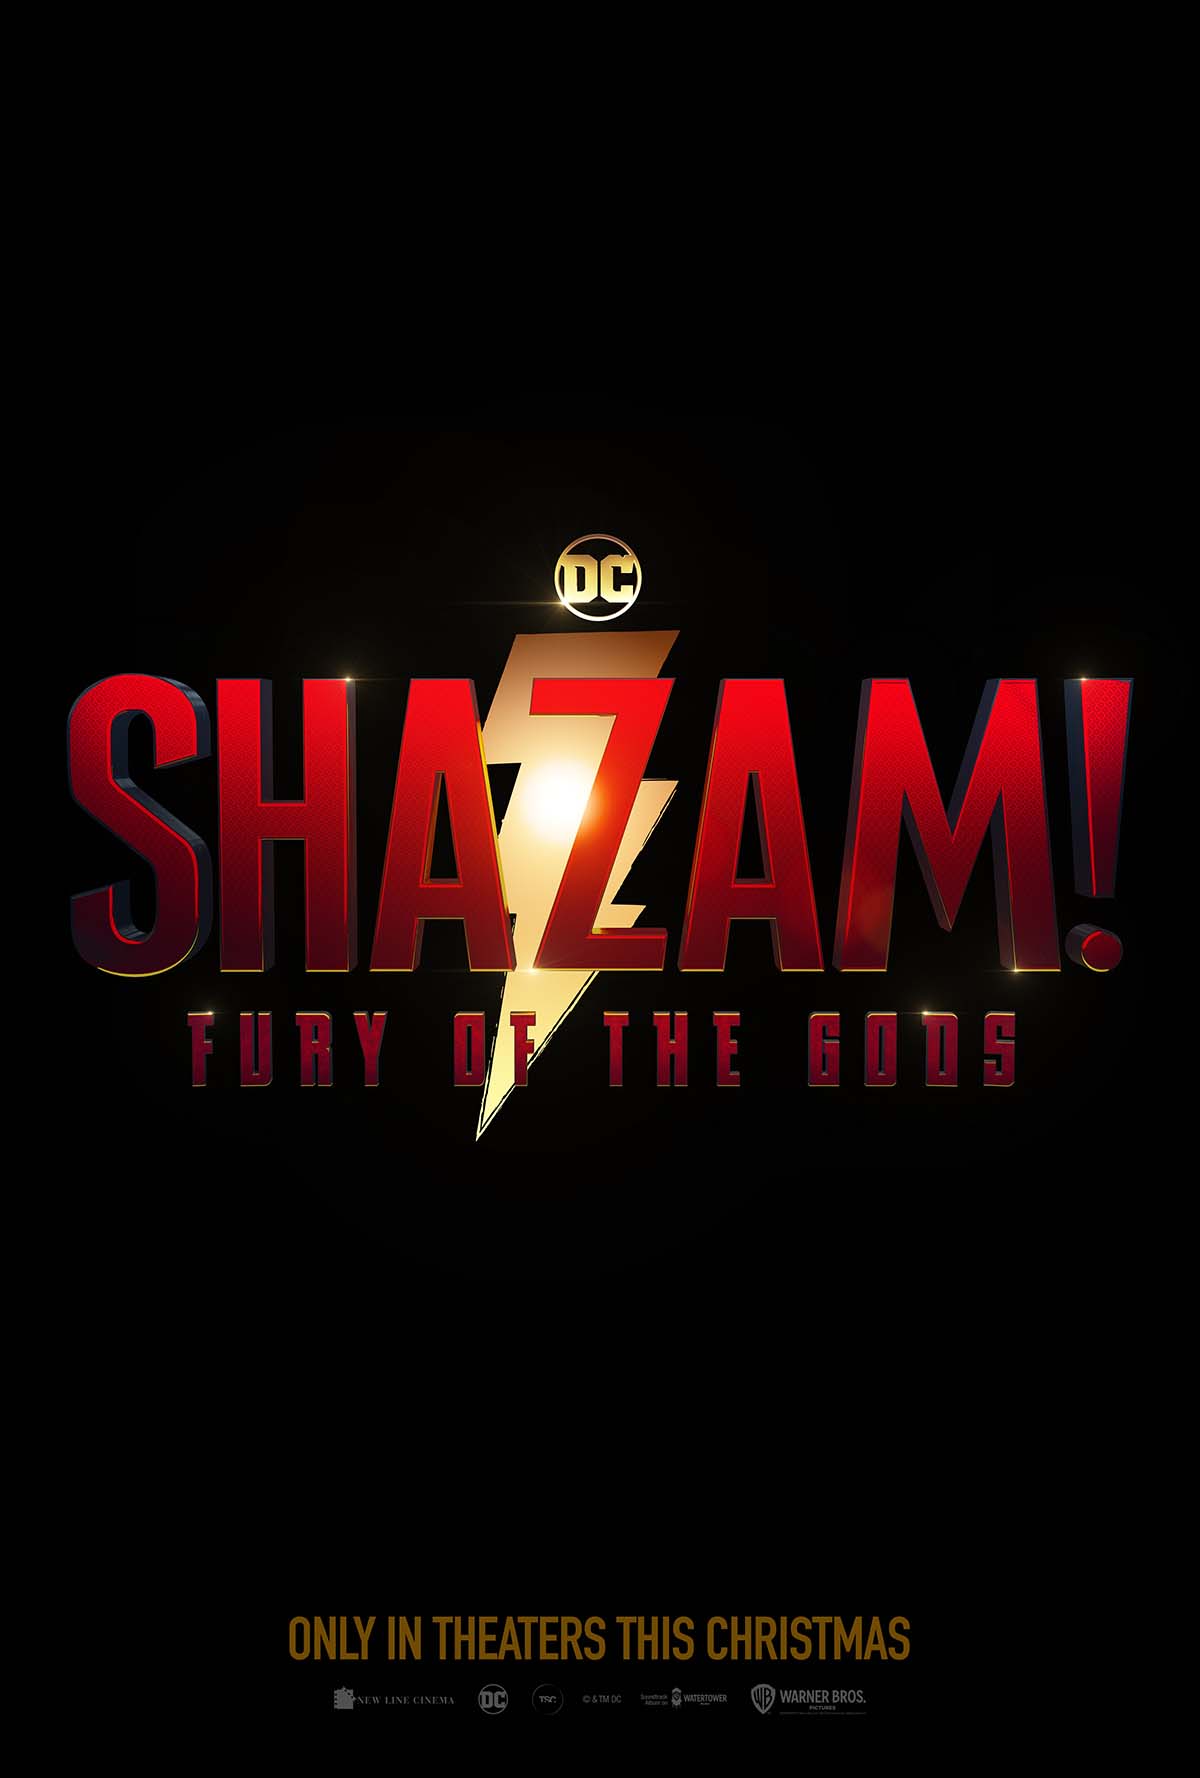 SPOILERS: Shazam: Fury of the Gods plot leaked